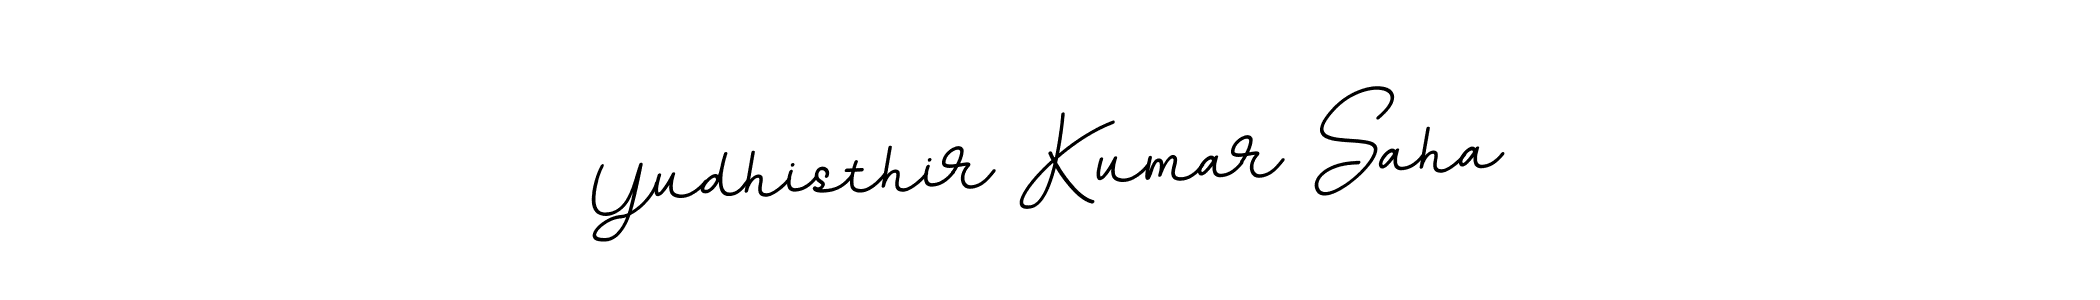 Yudhisthir Kumar Saha stylish signature style. Best Handwritten Sign (BallpointsItalic-DORy9) for my name. Handwritten Signature Collection Ideas for my name Yudhisthir Kumar Saha. Yudhisthir Kumar Saha signature style 11 images and pictures png